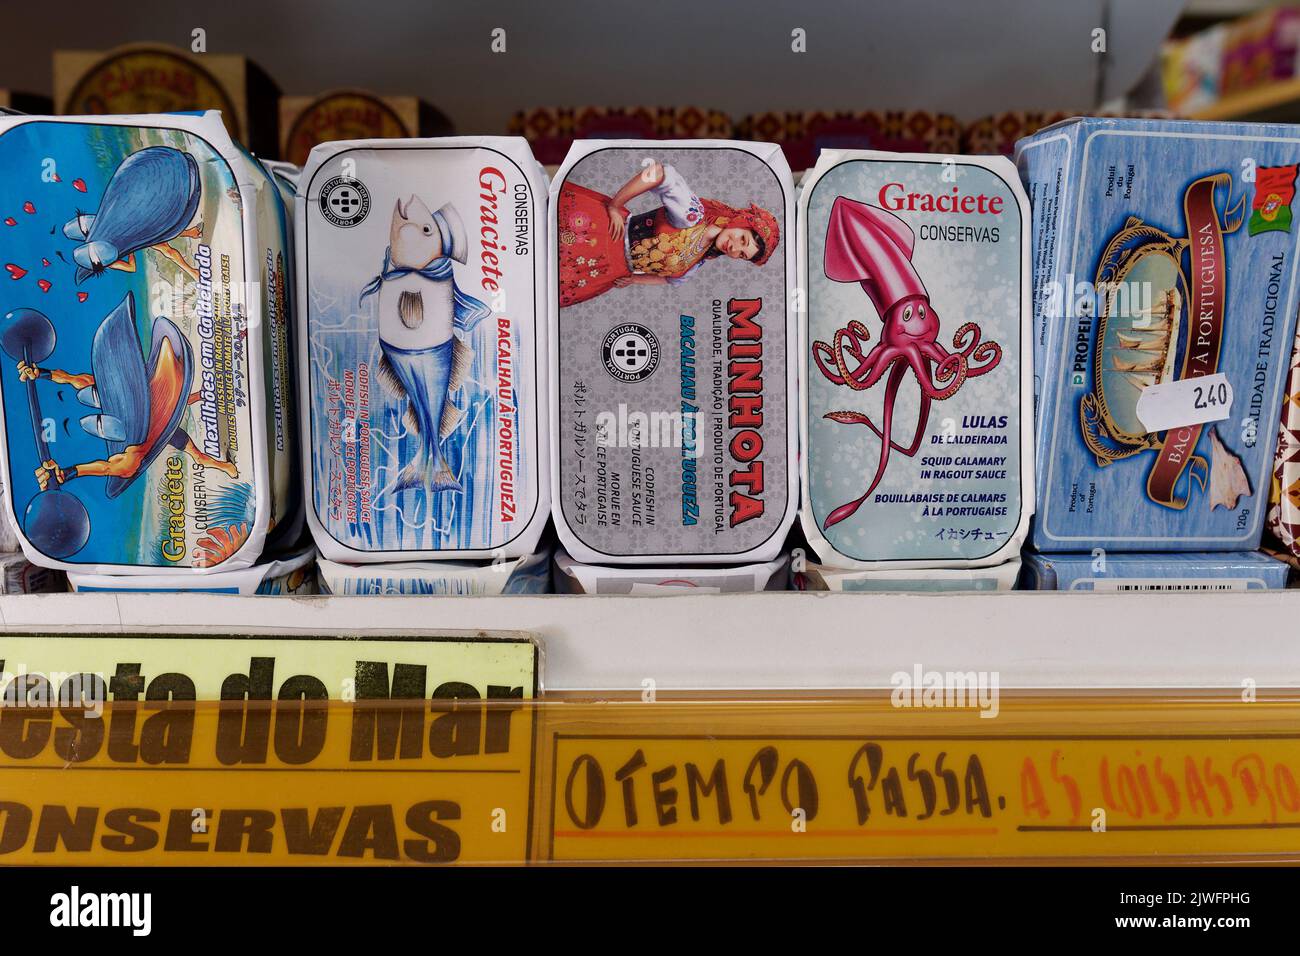 Pesce in scatola o in scatola con disegni vari in un negozio a Porto, Portogallo Foto Stock